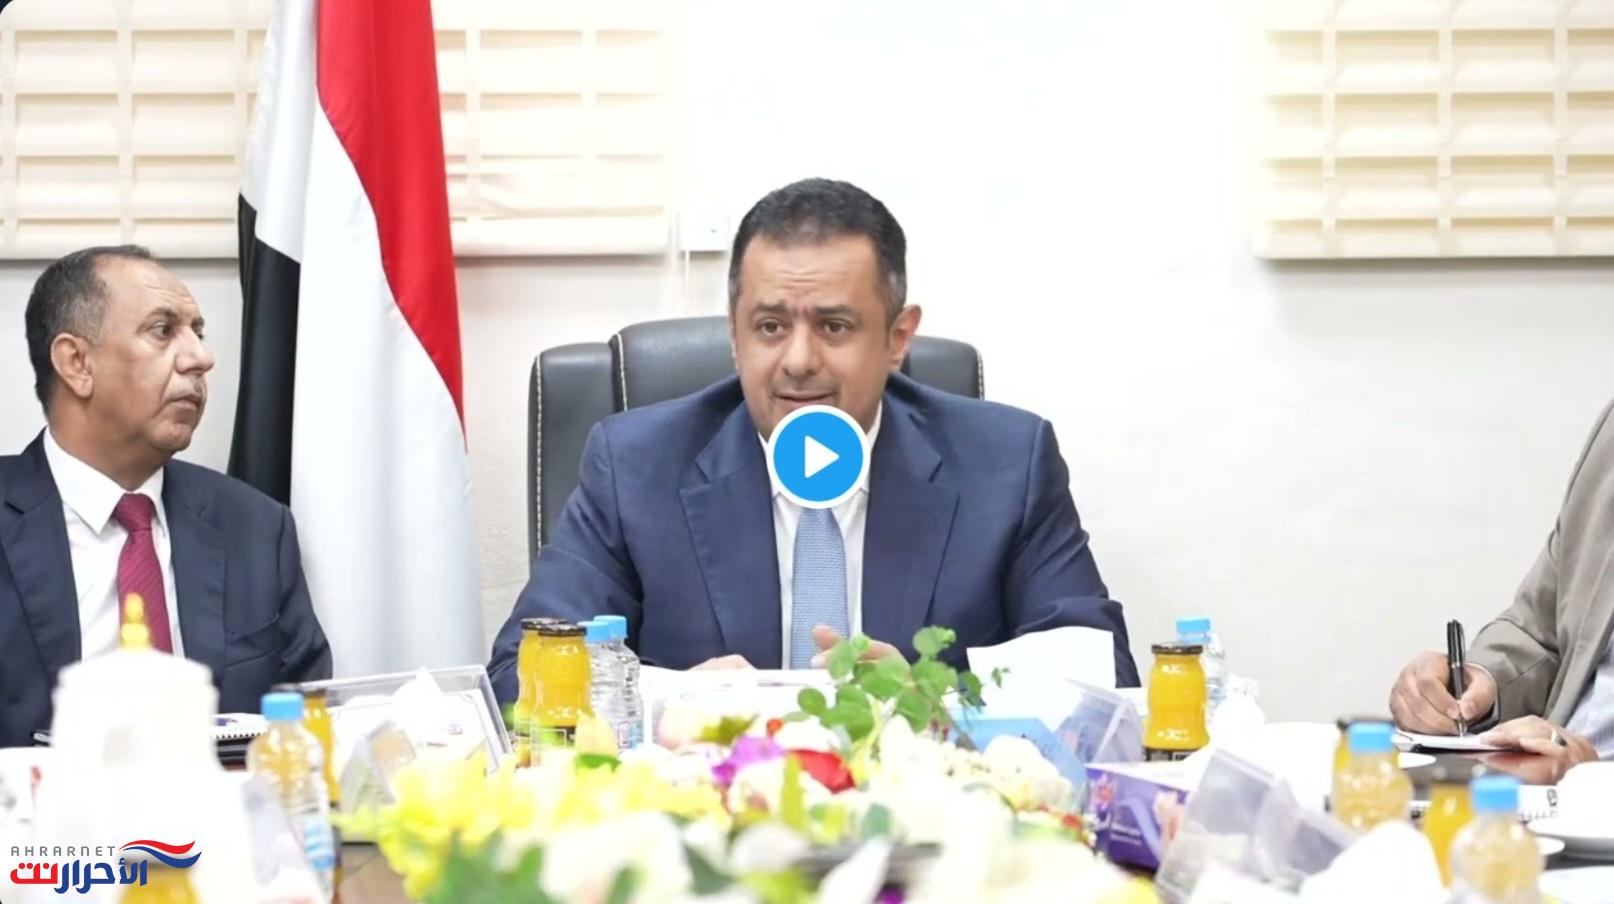 ‏فيديو لكلمة رئيس الوزراء الدكتور معين عبدالملك في اجتماع للجنة الأمن الغذائي